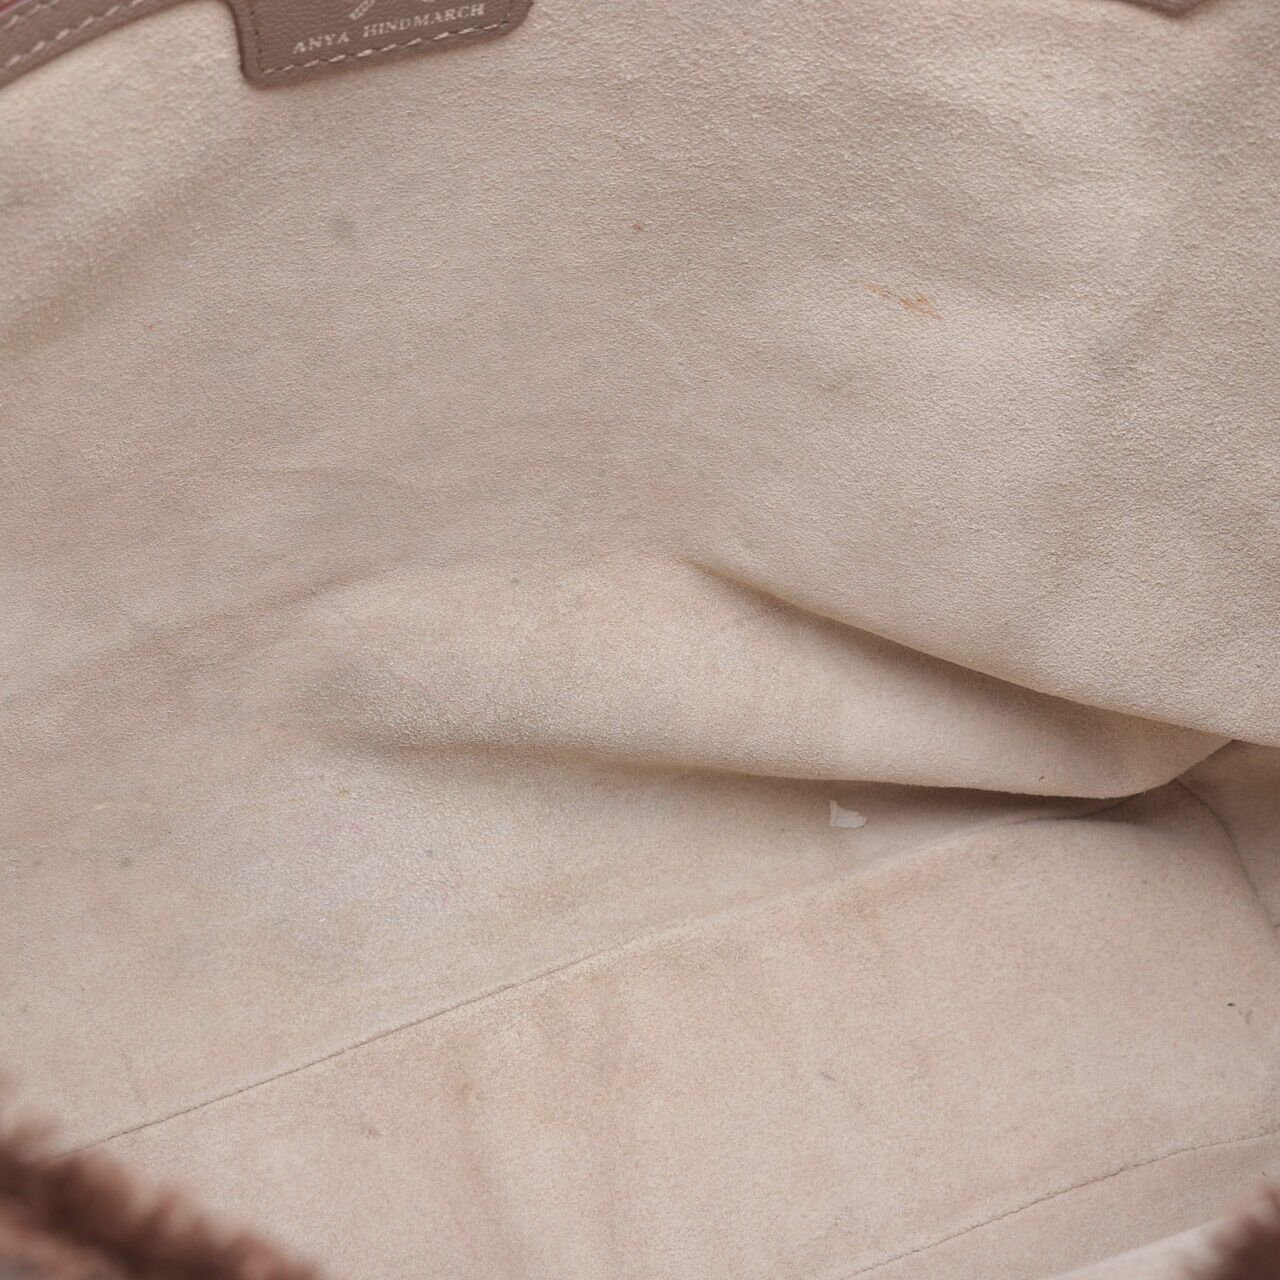 Anya Hindmarch Logo Brown Canvas Tote Bag